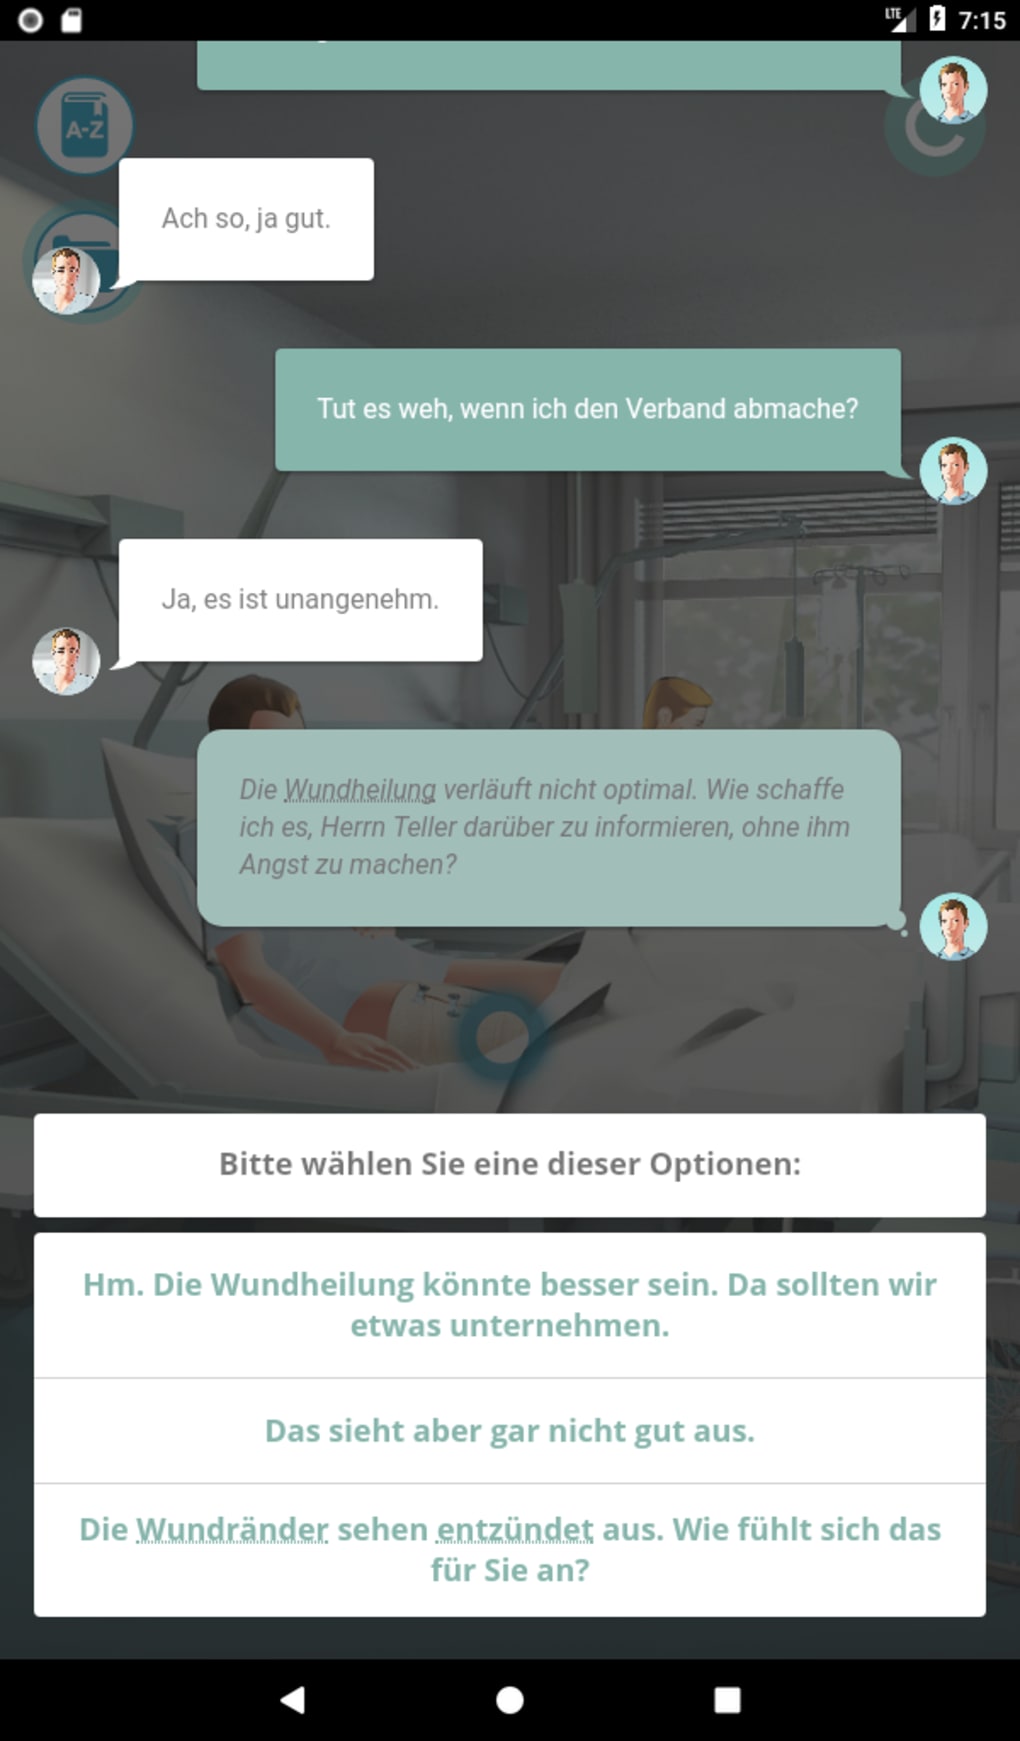 Ein Tag Deutsch in der Pflege APK for Android - Download